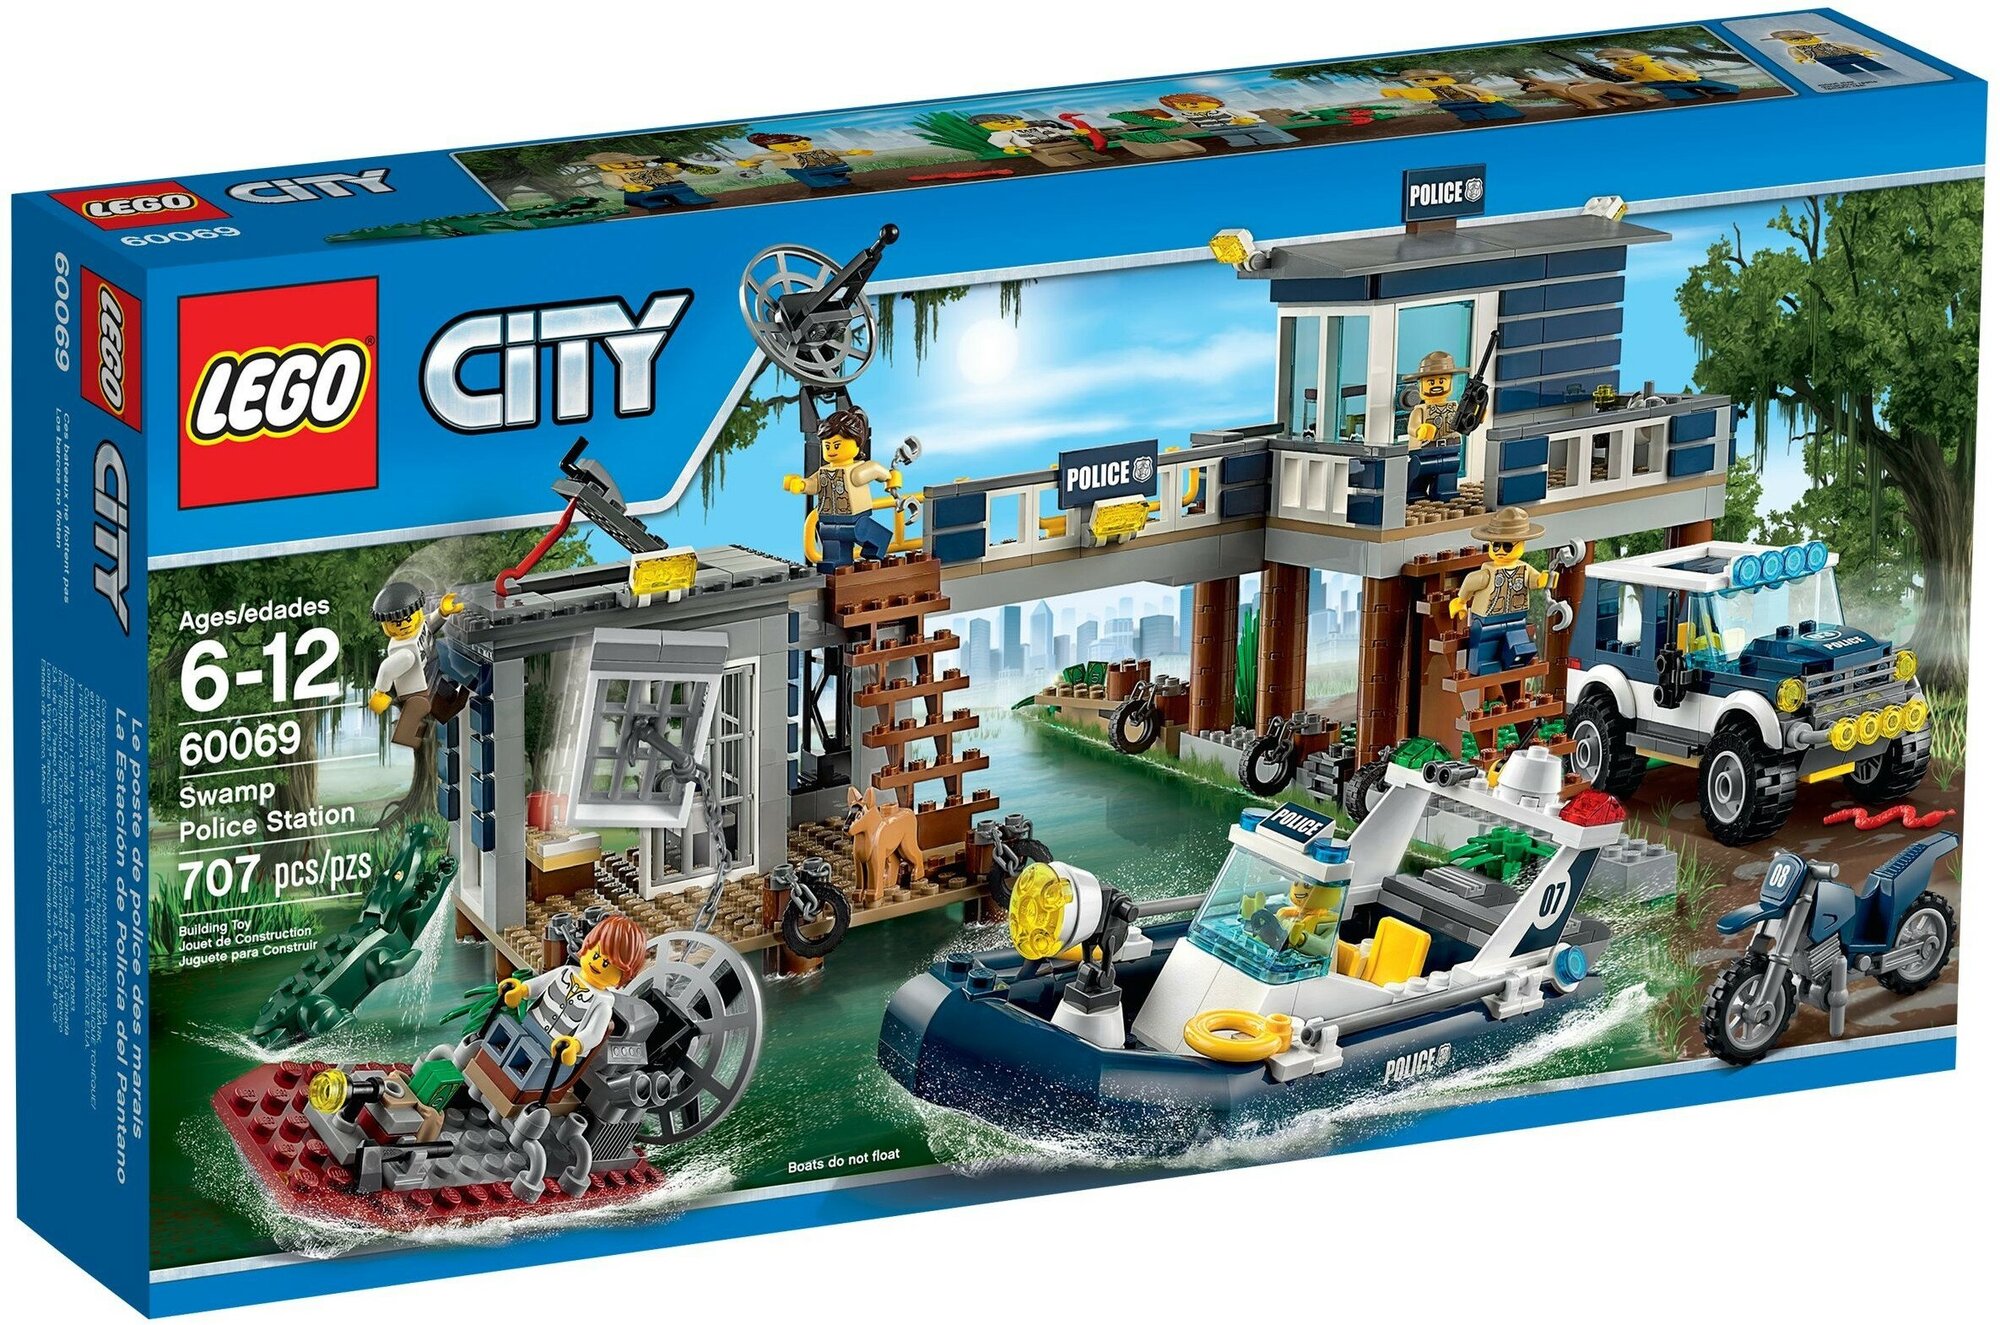 Конструктор LEGO City 60069 Полицейский участок на болоте, 707 дет.